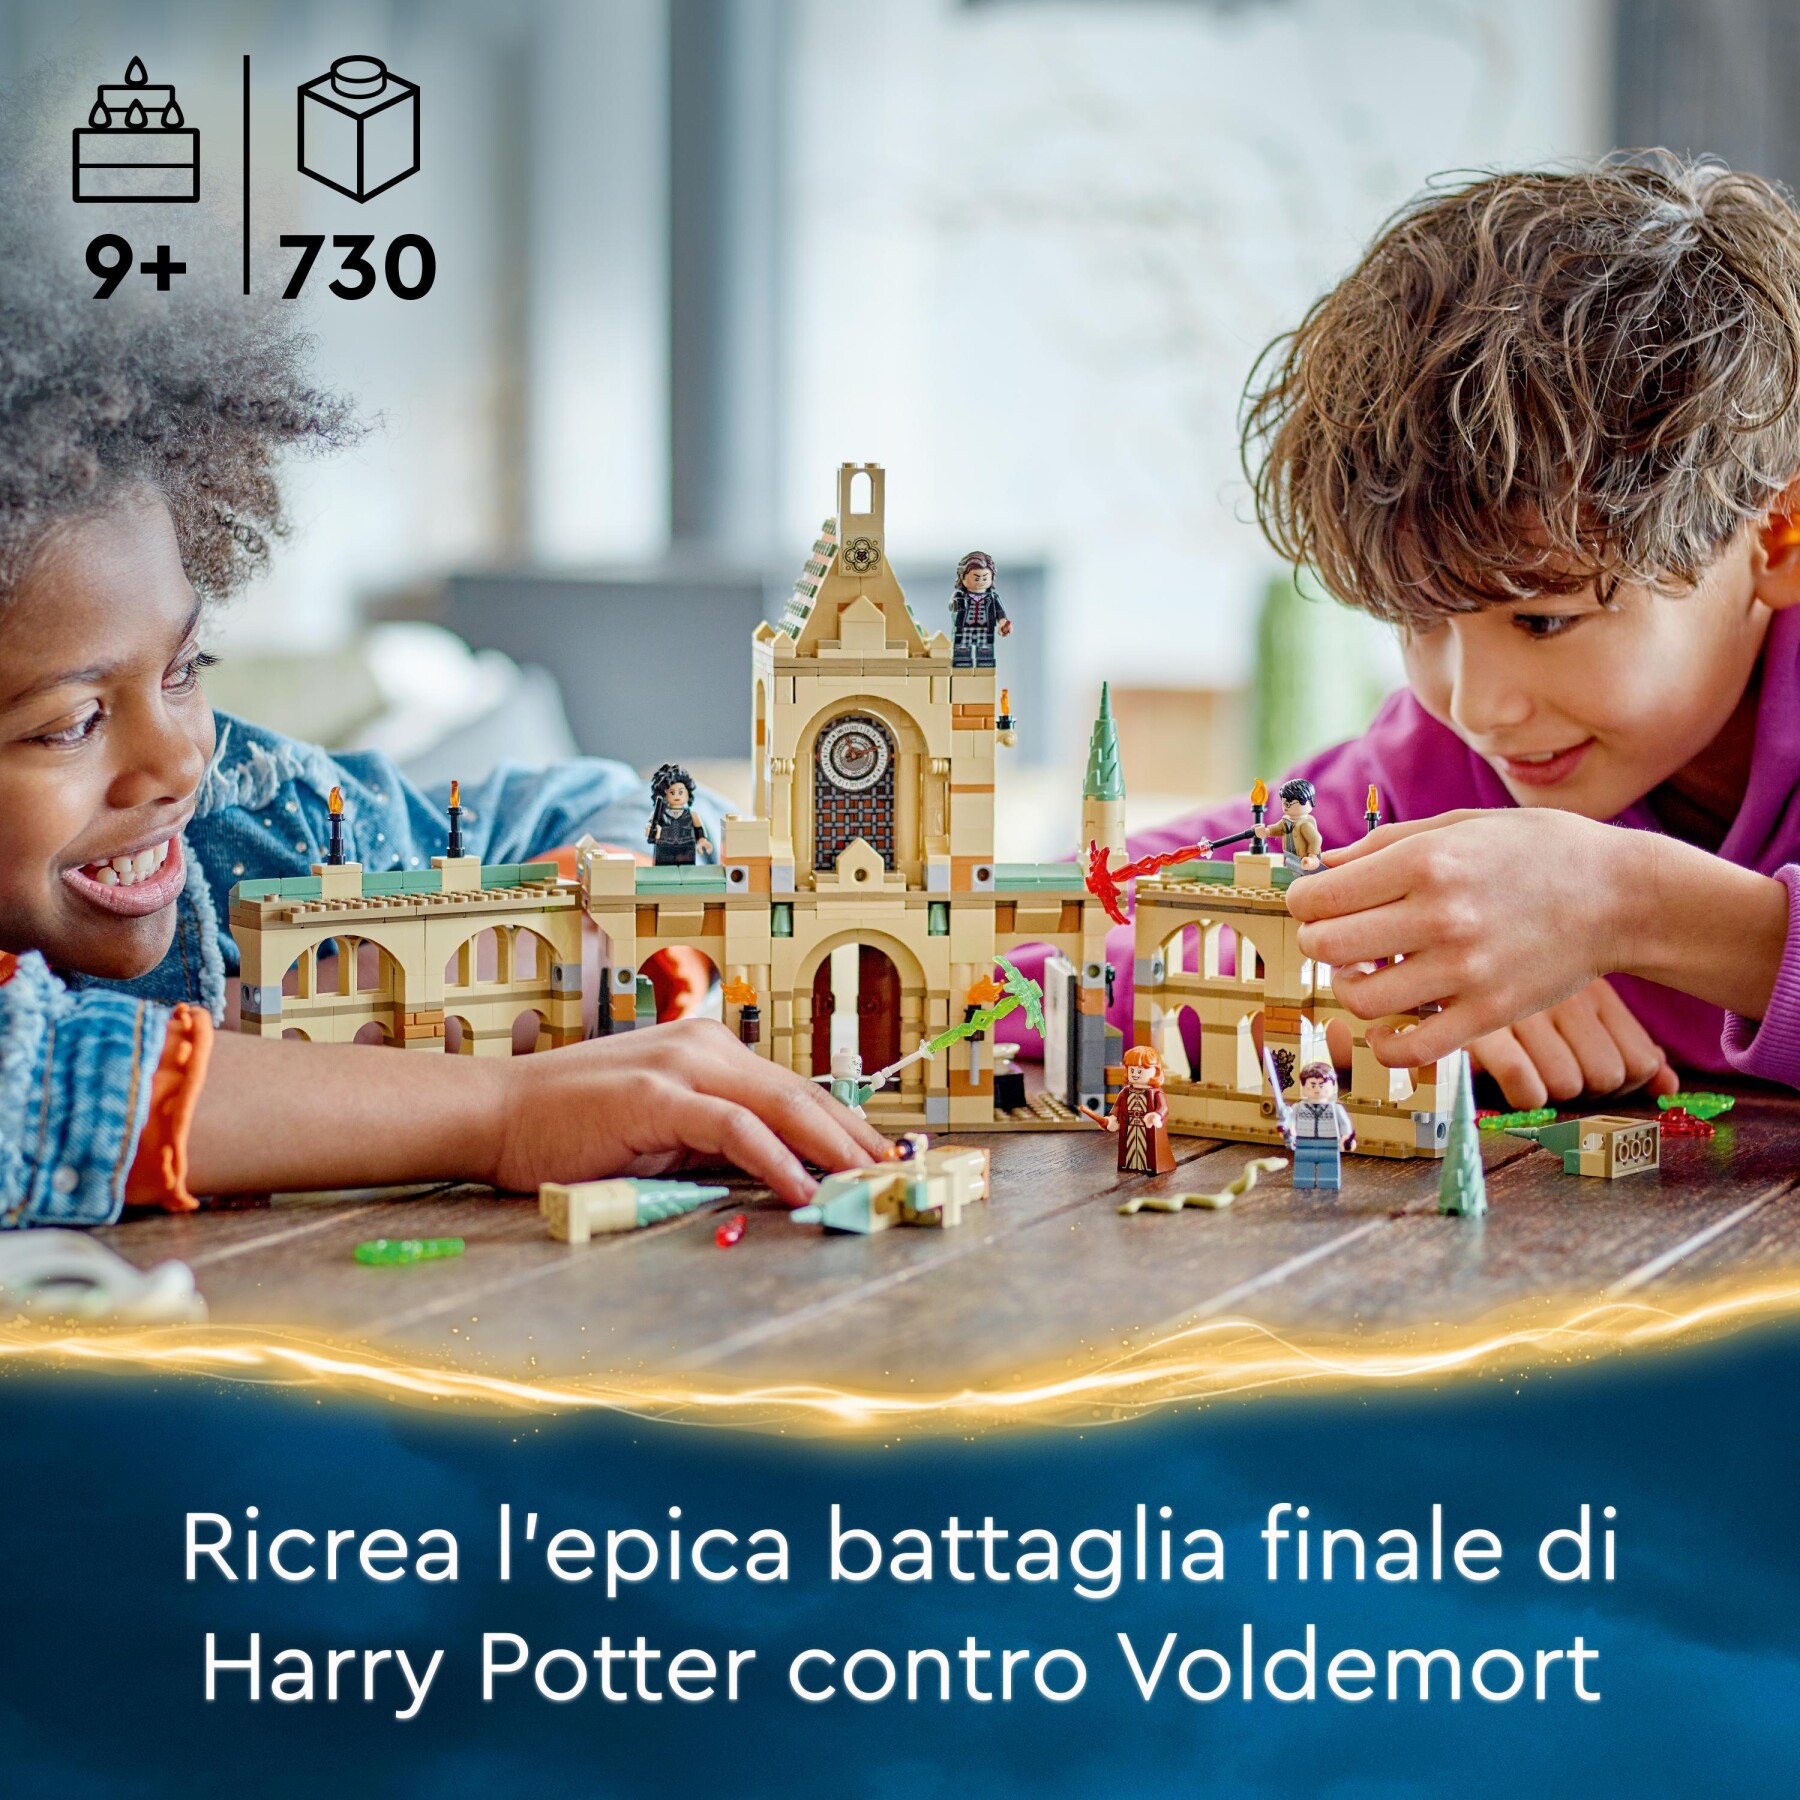 Lego harry potter 76415 la battaglia di hogwarts, castello giocattolo con minifigure di bellatrix lestrange e voldemort - Harry Potter, LEGO® Harry Potter™